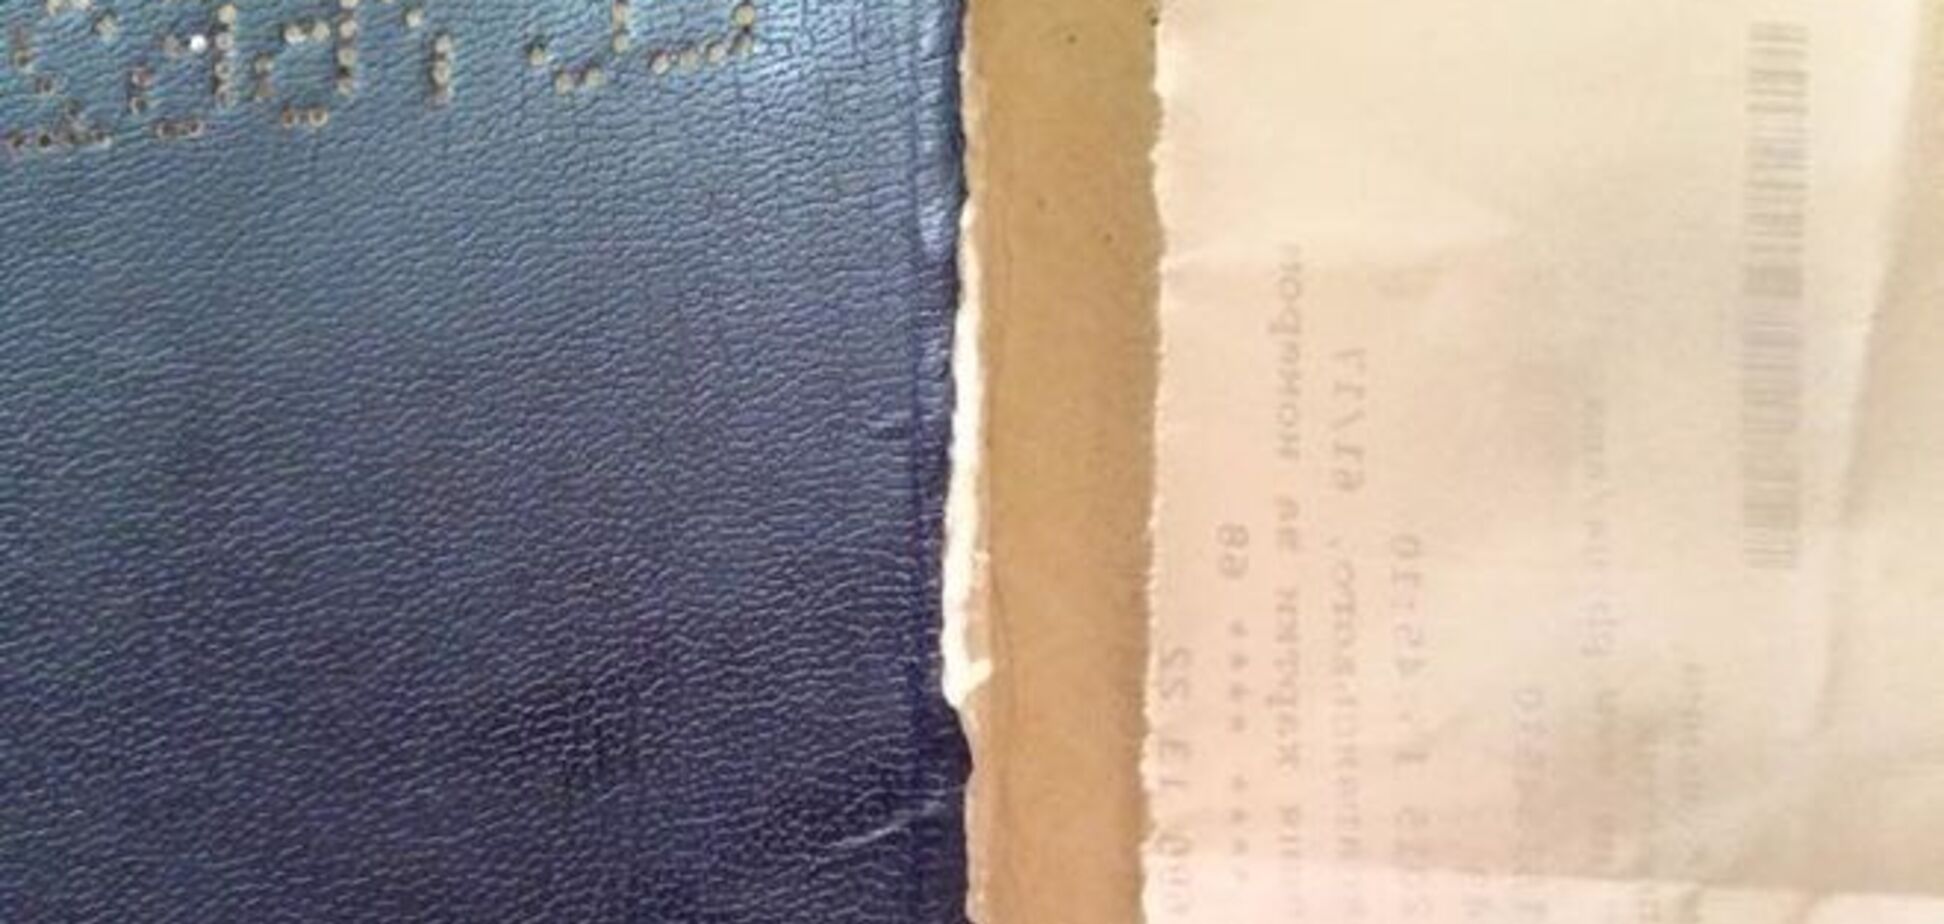 Российский пограничник изуродовал паспорт украинцу, чтобы тот не попал домой: фотофакт